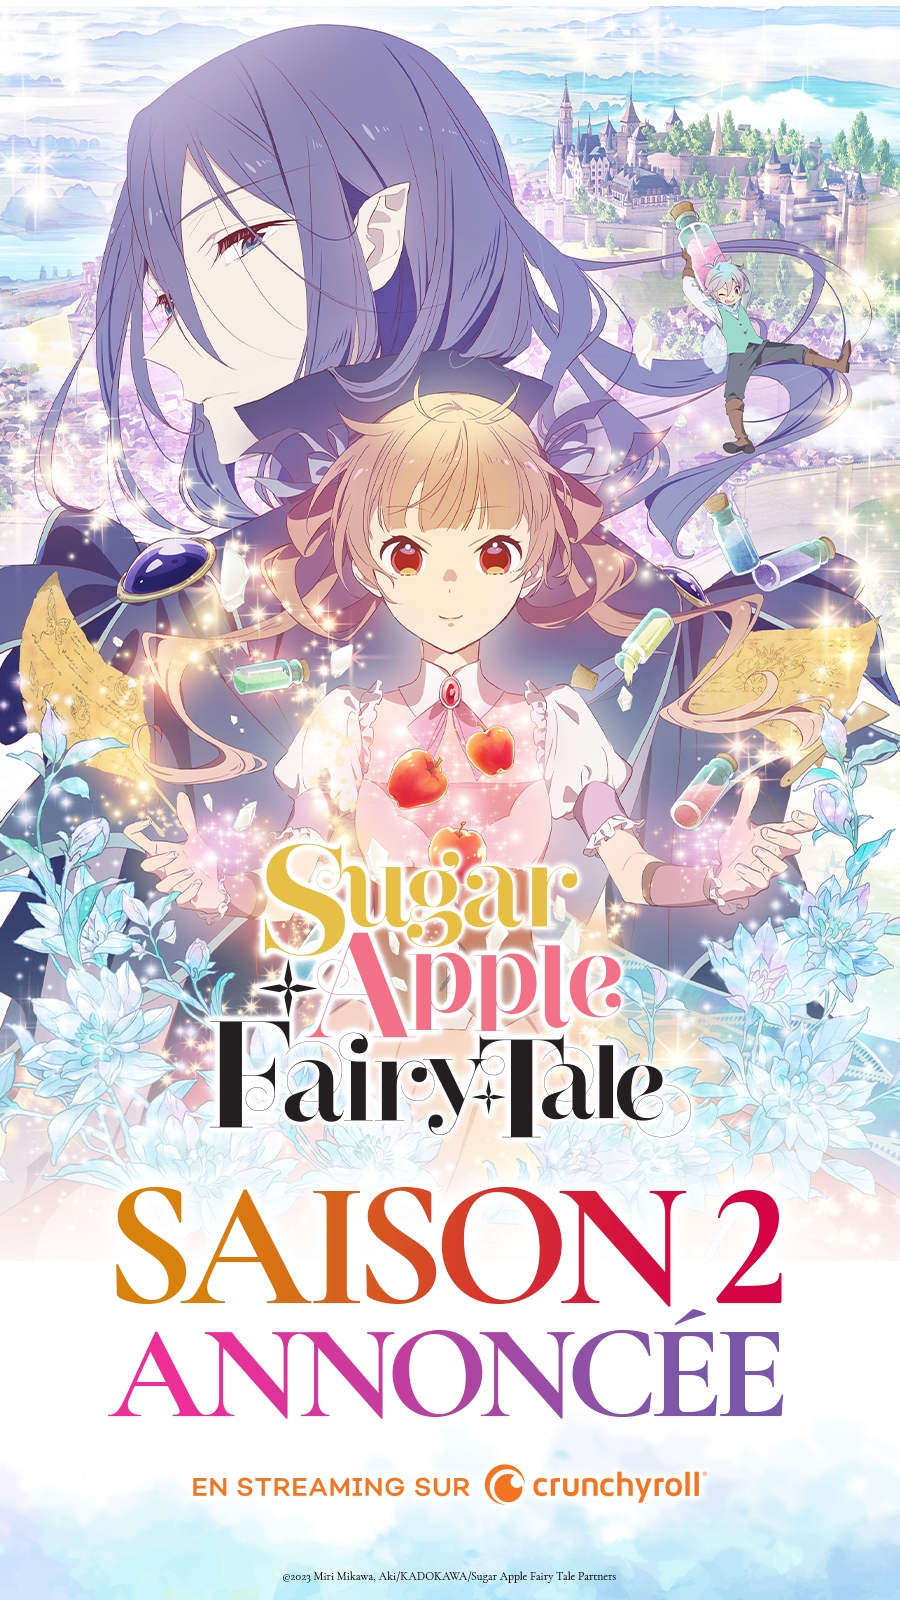 Sugar Apple Fairy Tale Saison 2 officialisée, elle sera diffusée sur Crunchyroll en streaming juste après le Japon.